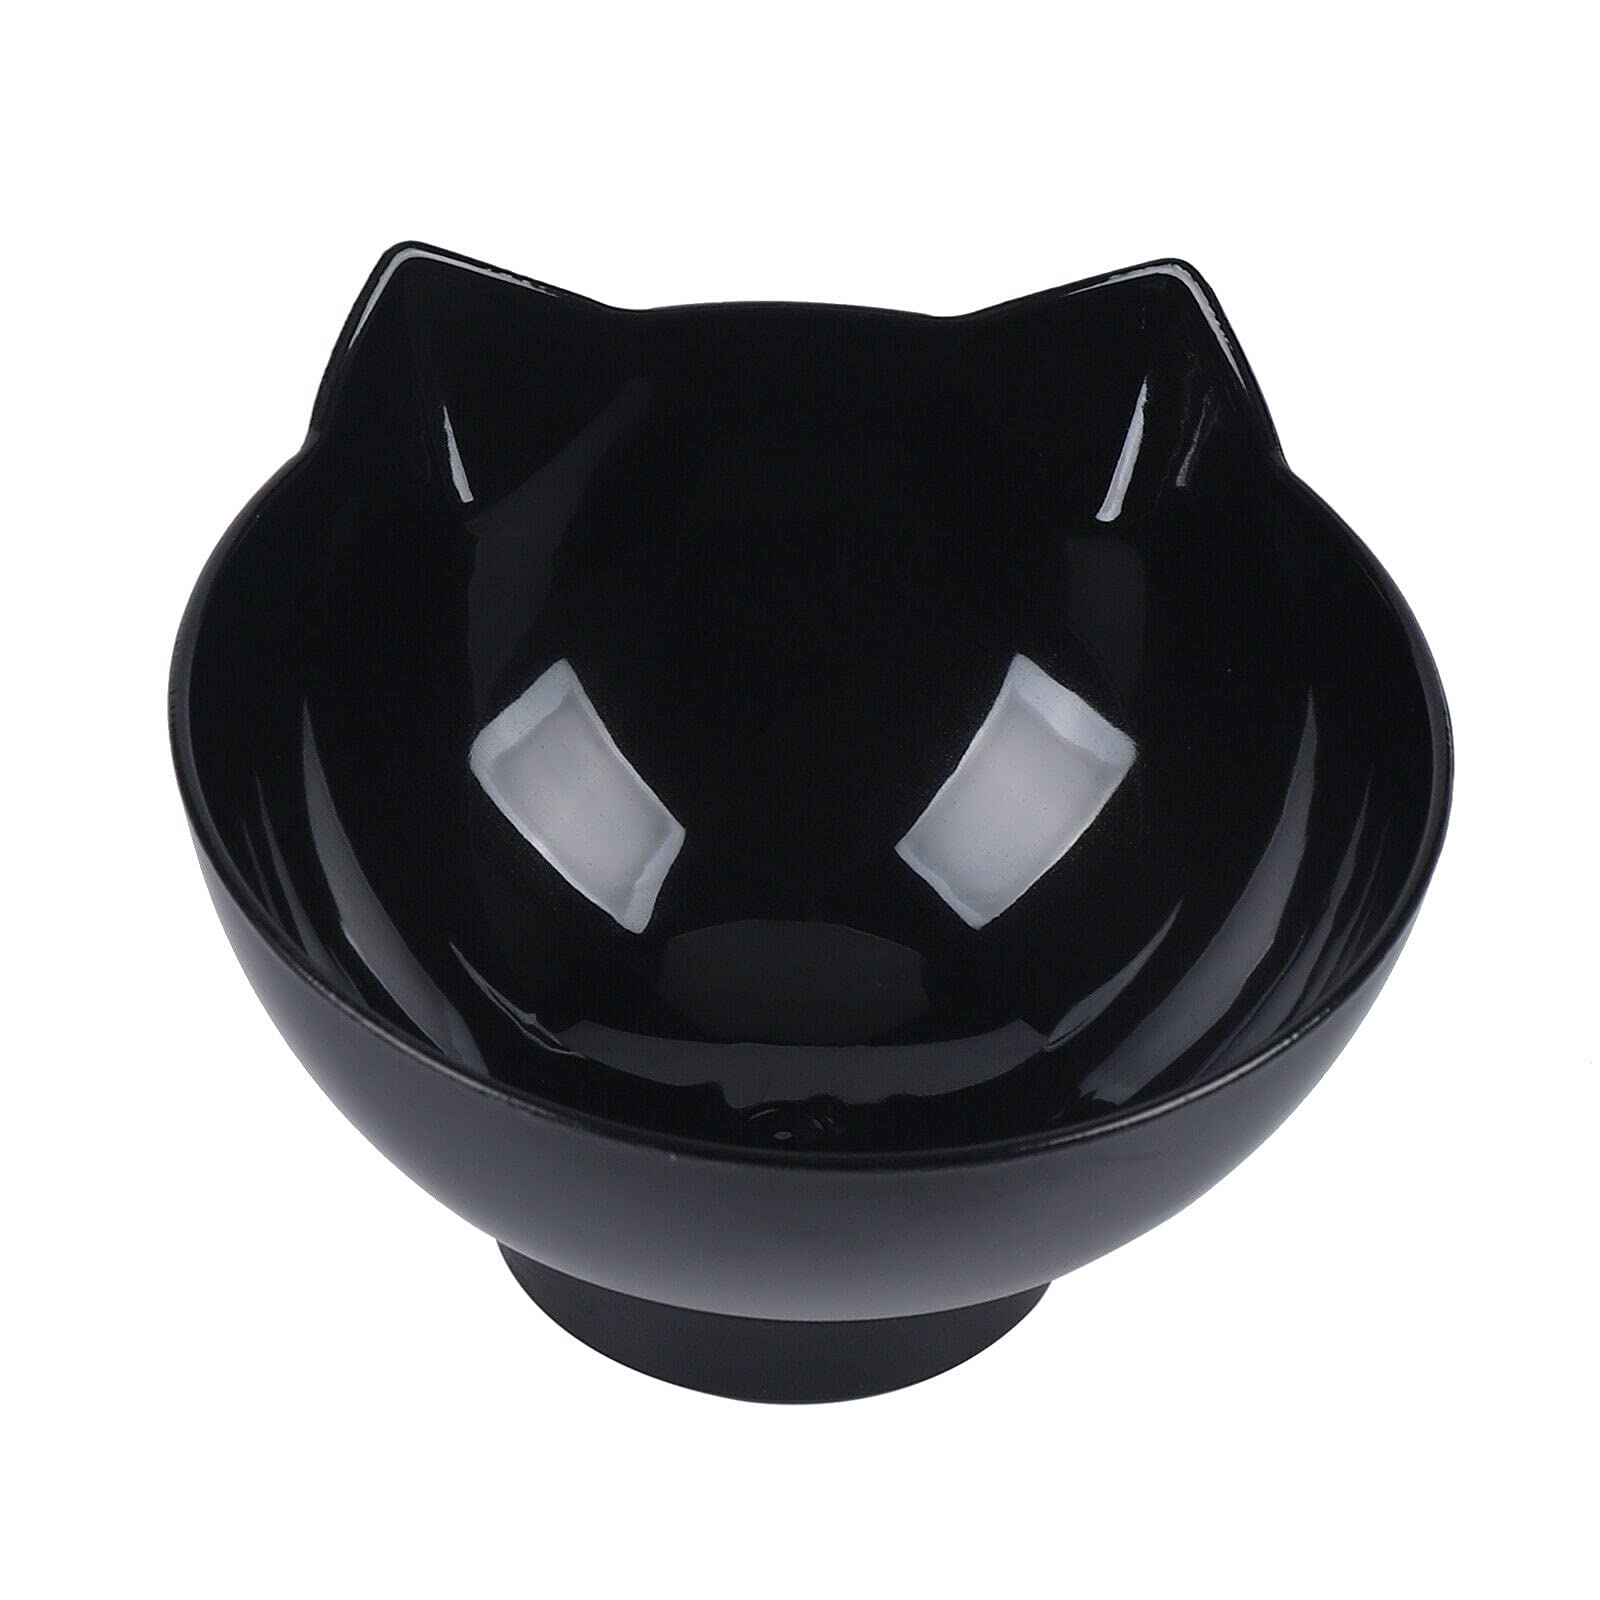 Gamelle moderne en plastique pour chat - Double coque - Convient pour les animaux domestiques (2 bols noirs de 27,5 x 13,5 x 14,2 cm)